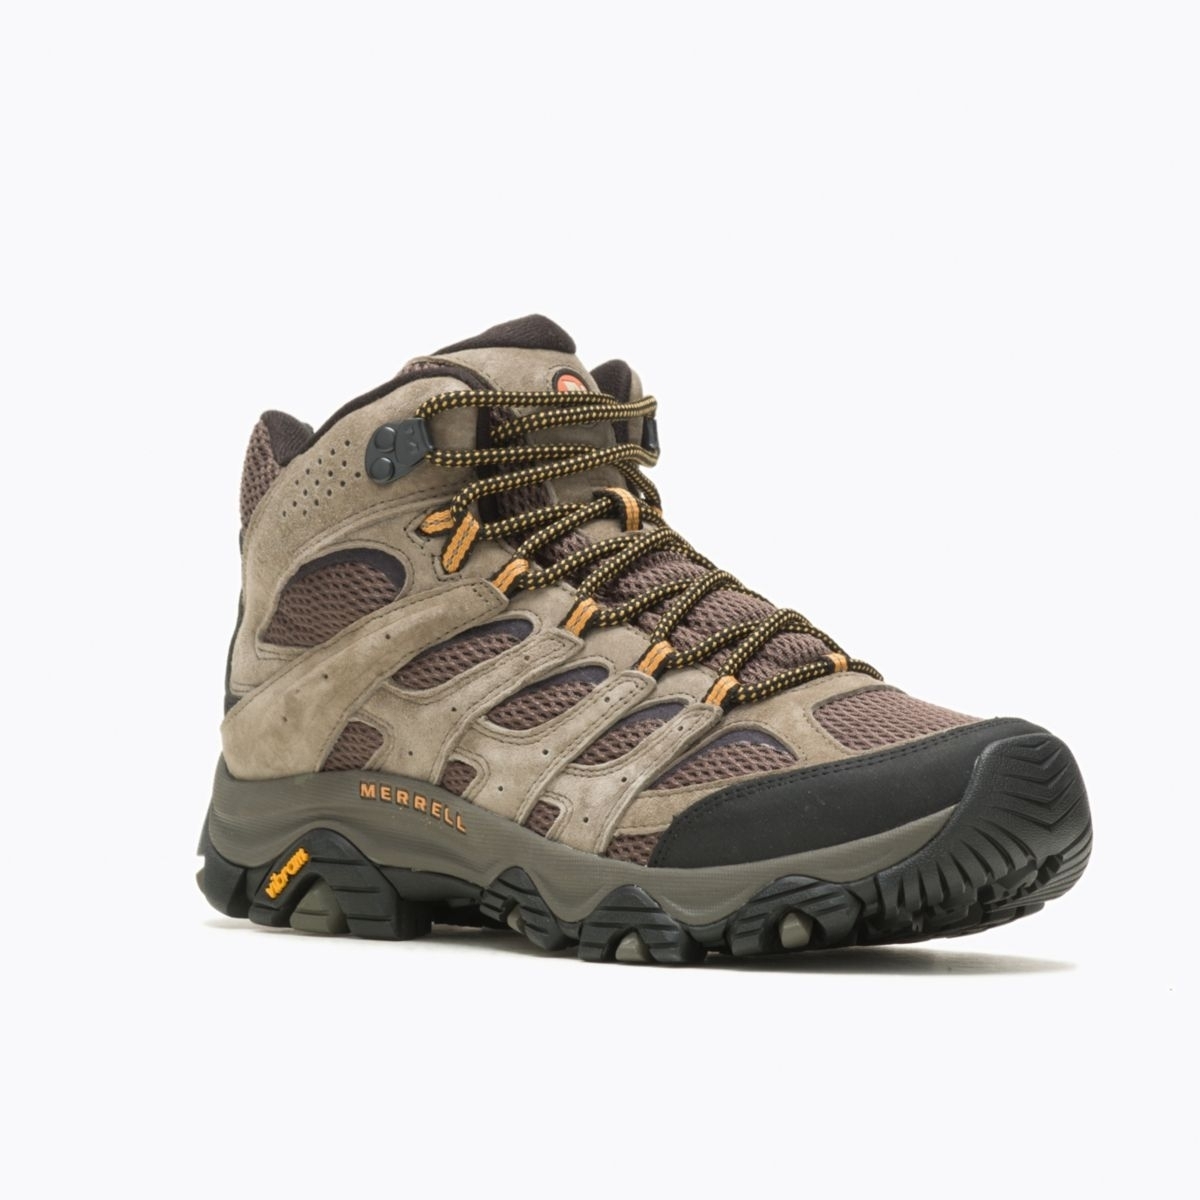 Merrell Men's Moab 3 Mid GORE-TEX Hiking Boot Walnut - J035795 WALNUT - WALNUT, 13